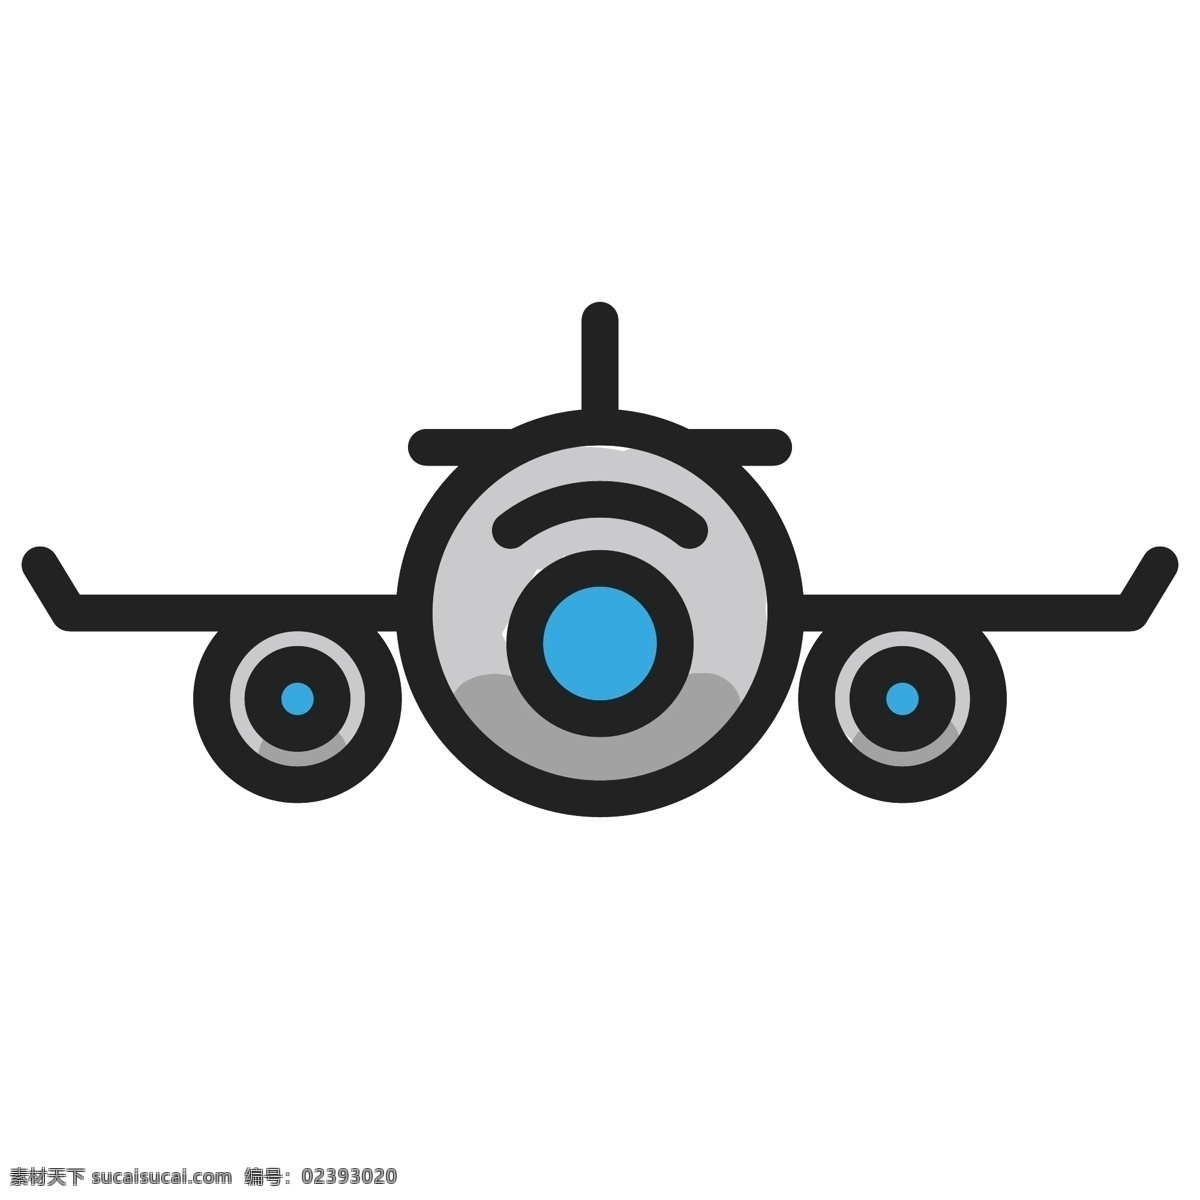 灰色 飞机 正面图 插图 灰色飞机 正面飞机插图 飞机正面切图 平面 蓝色 飞行 军事飞机 交通工具 空中